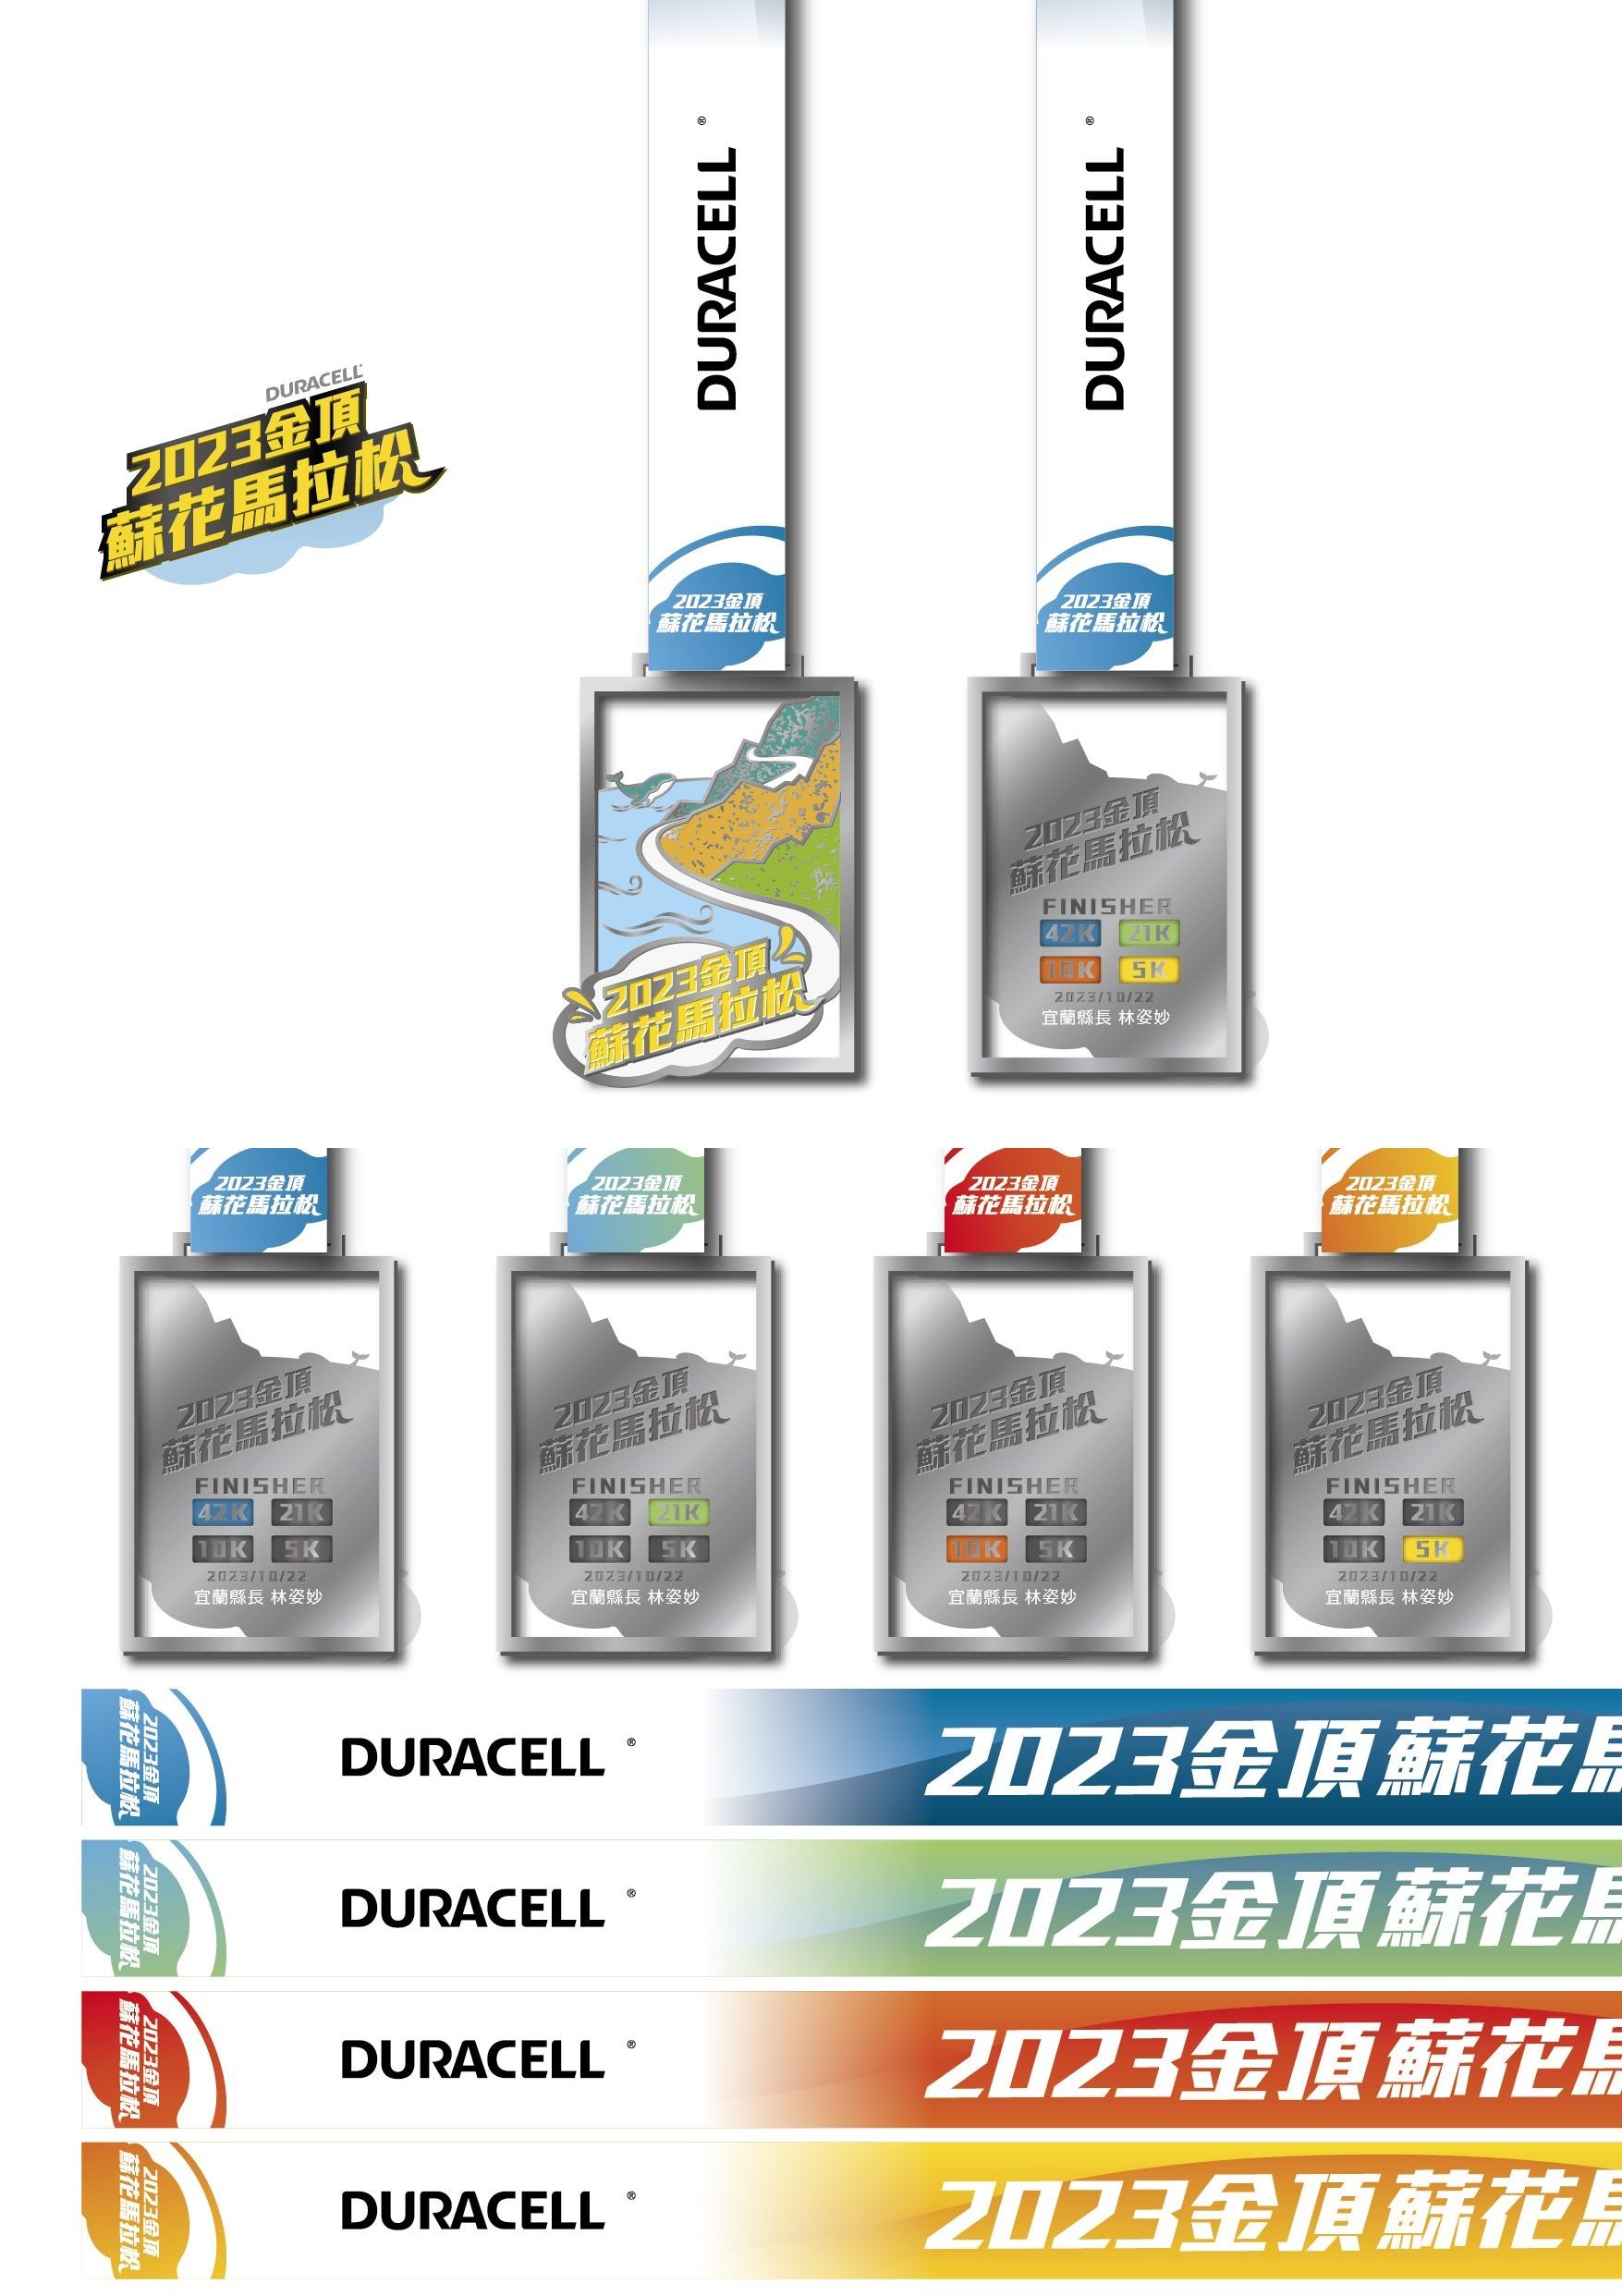 樂活報名網 - 2023 金頂蘇花馬拉松-完賽獎牌